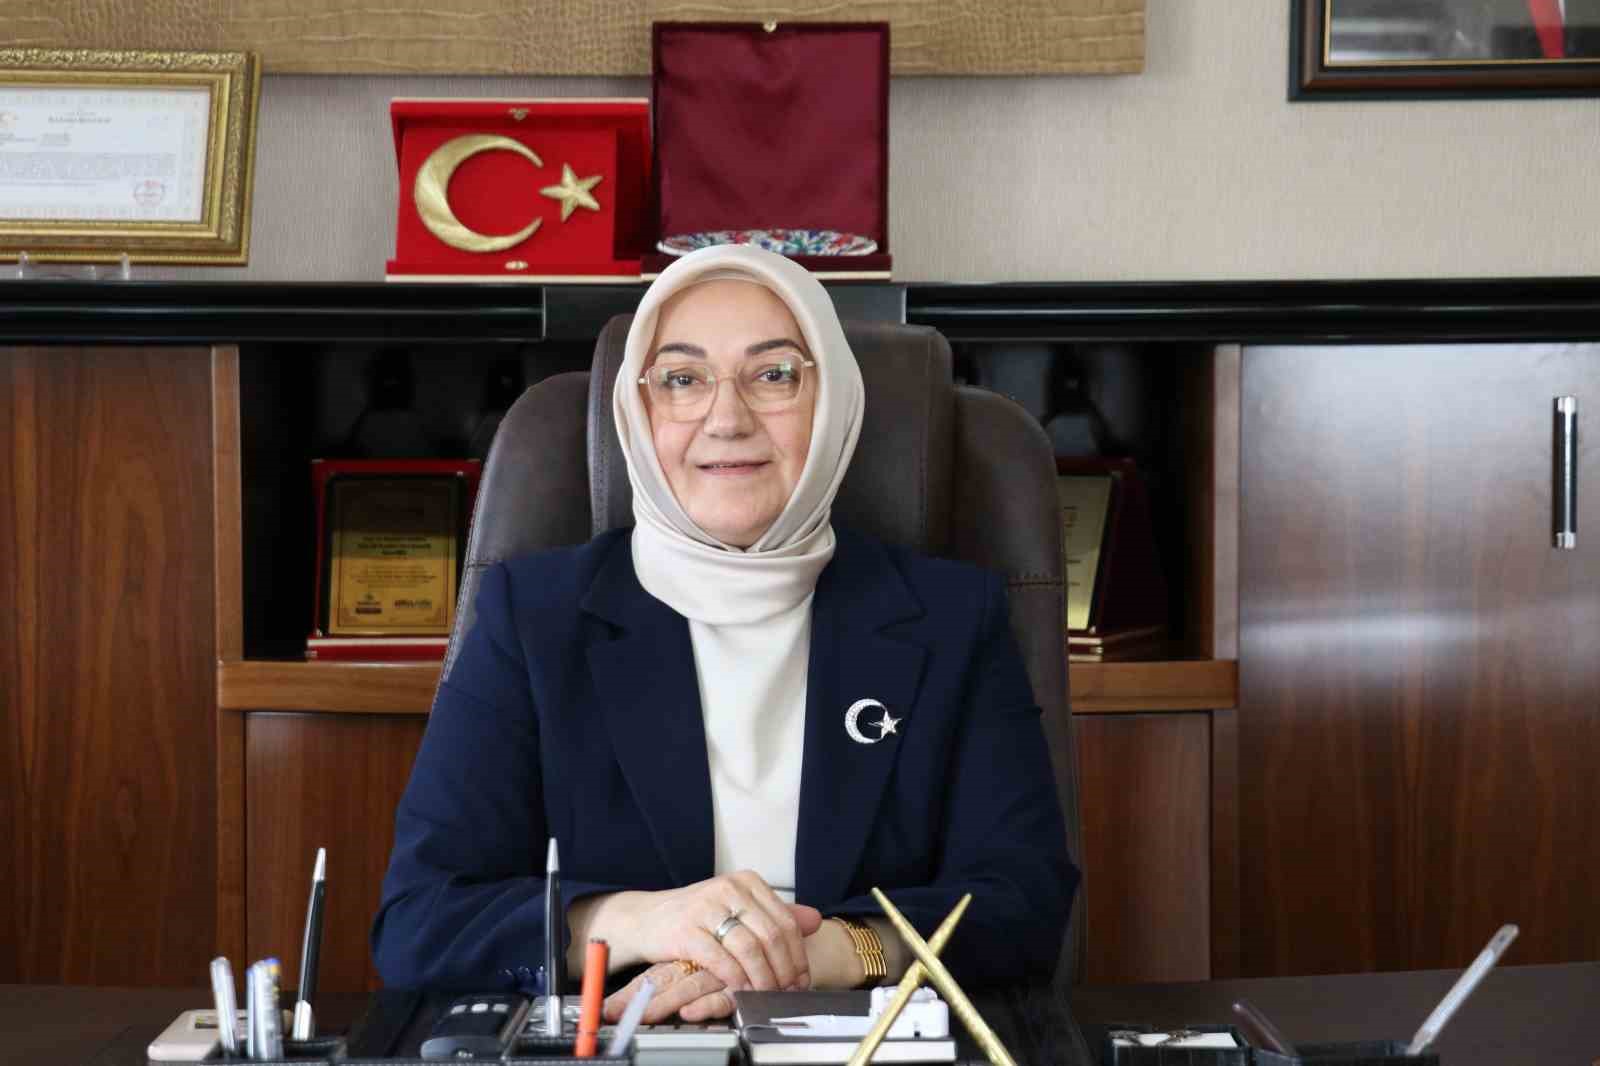 Van İŞKUR İl Müdürlüğüne Selma Biçek atandı